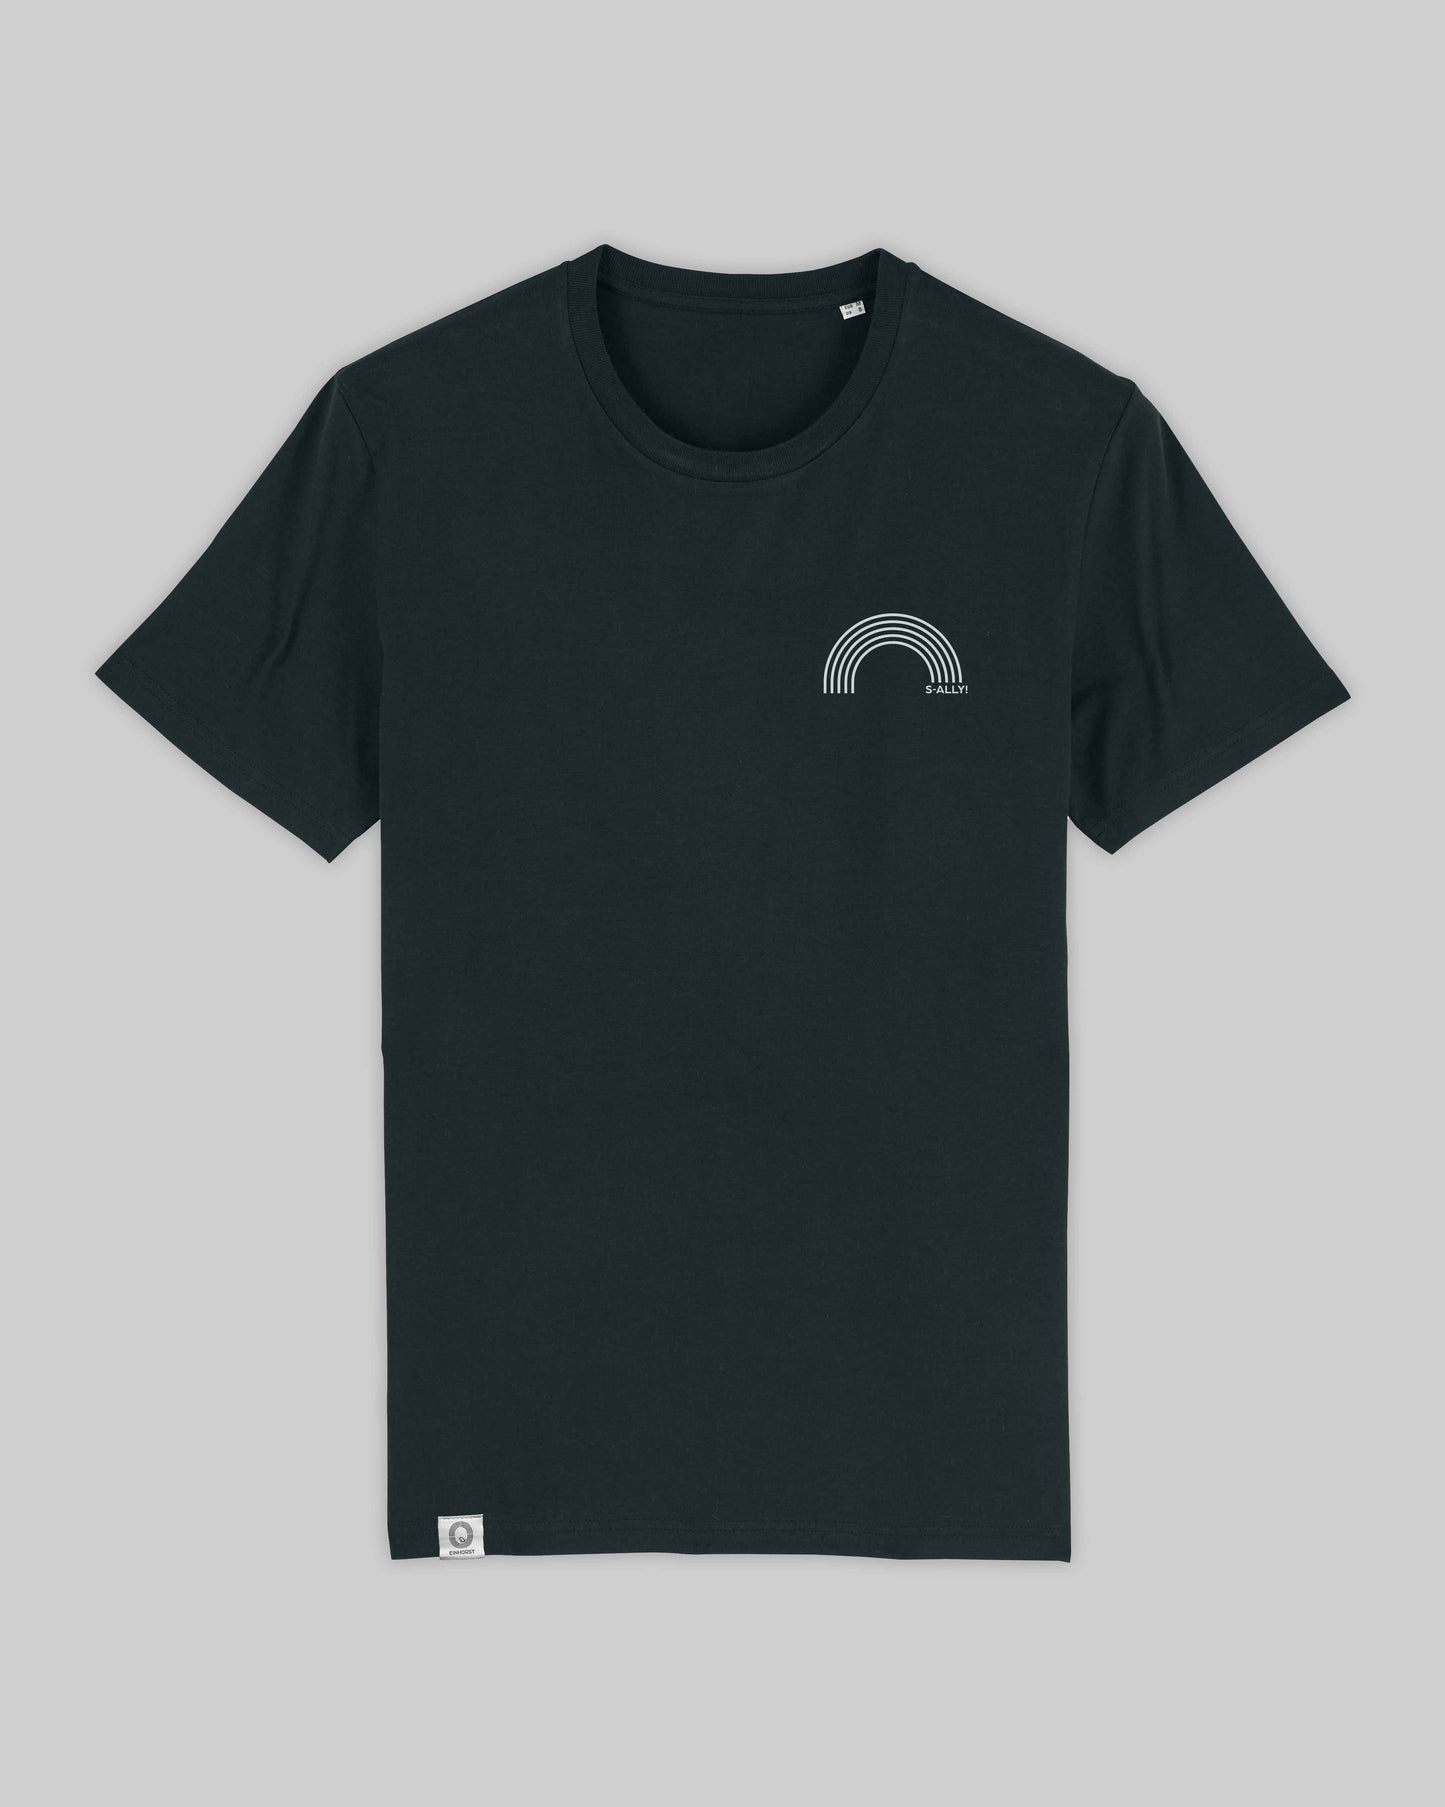 EINHORST® unisex Organic Shirt in Schwarz mit dem Motiv "s-ally Regenbogen" in der Kombination weißer Regenbogen mit weißer Schrift, Bild von Shirt von vorne